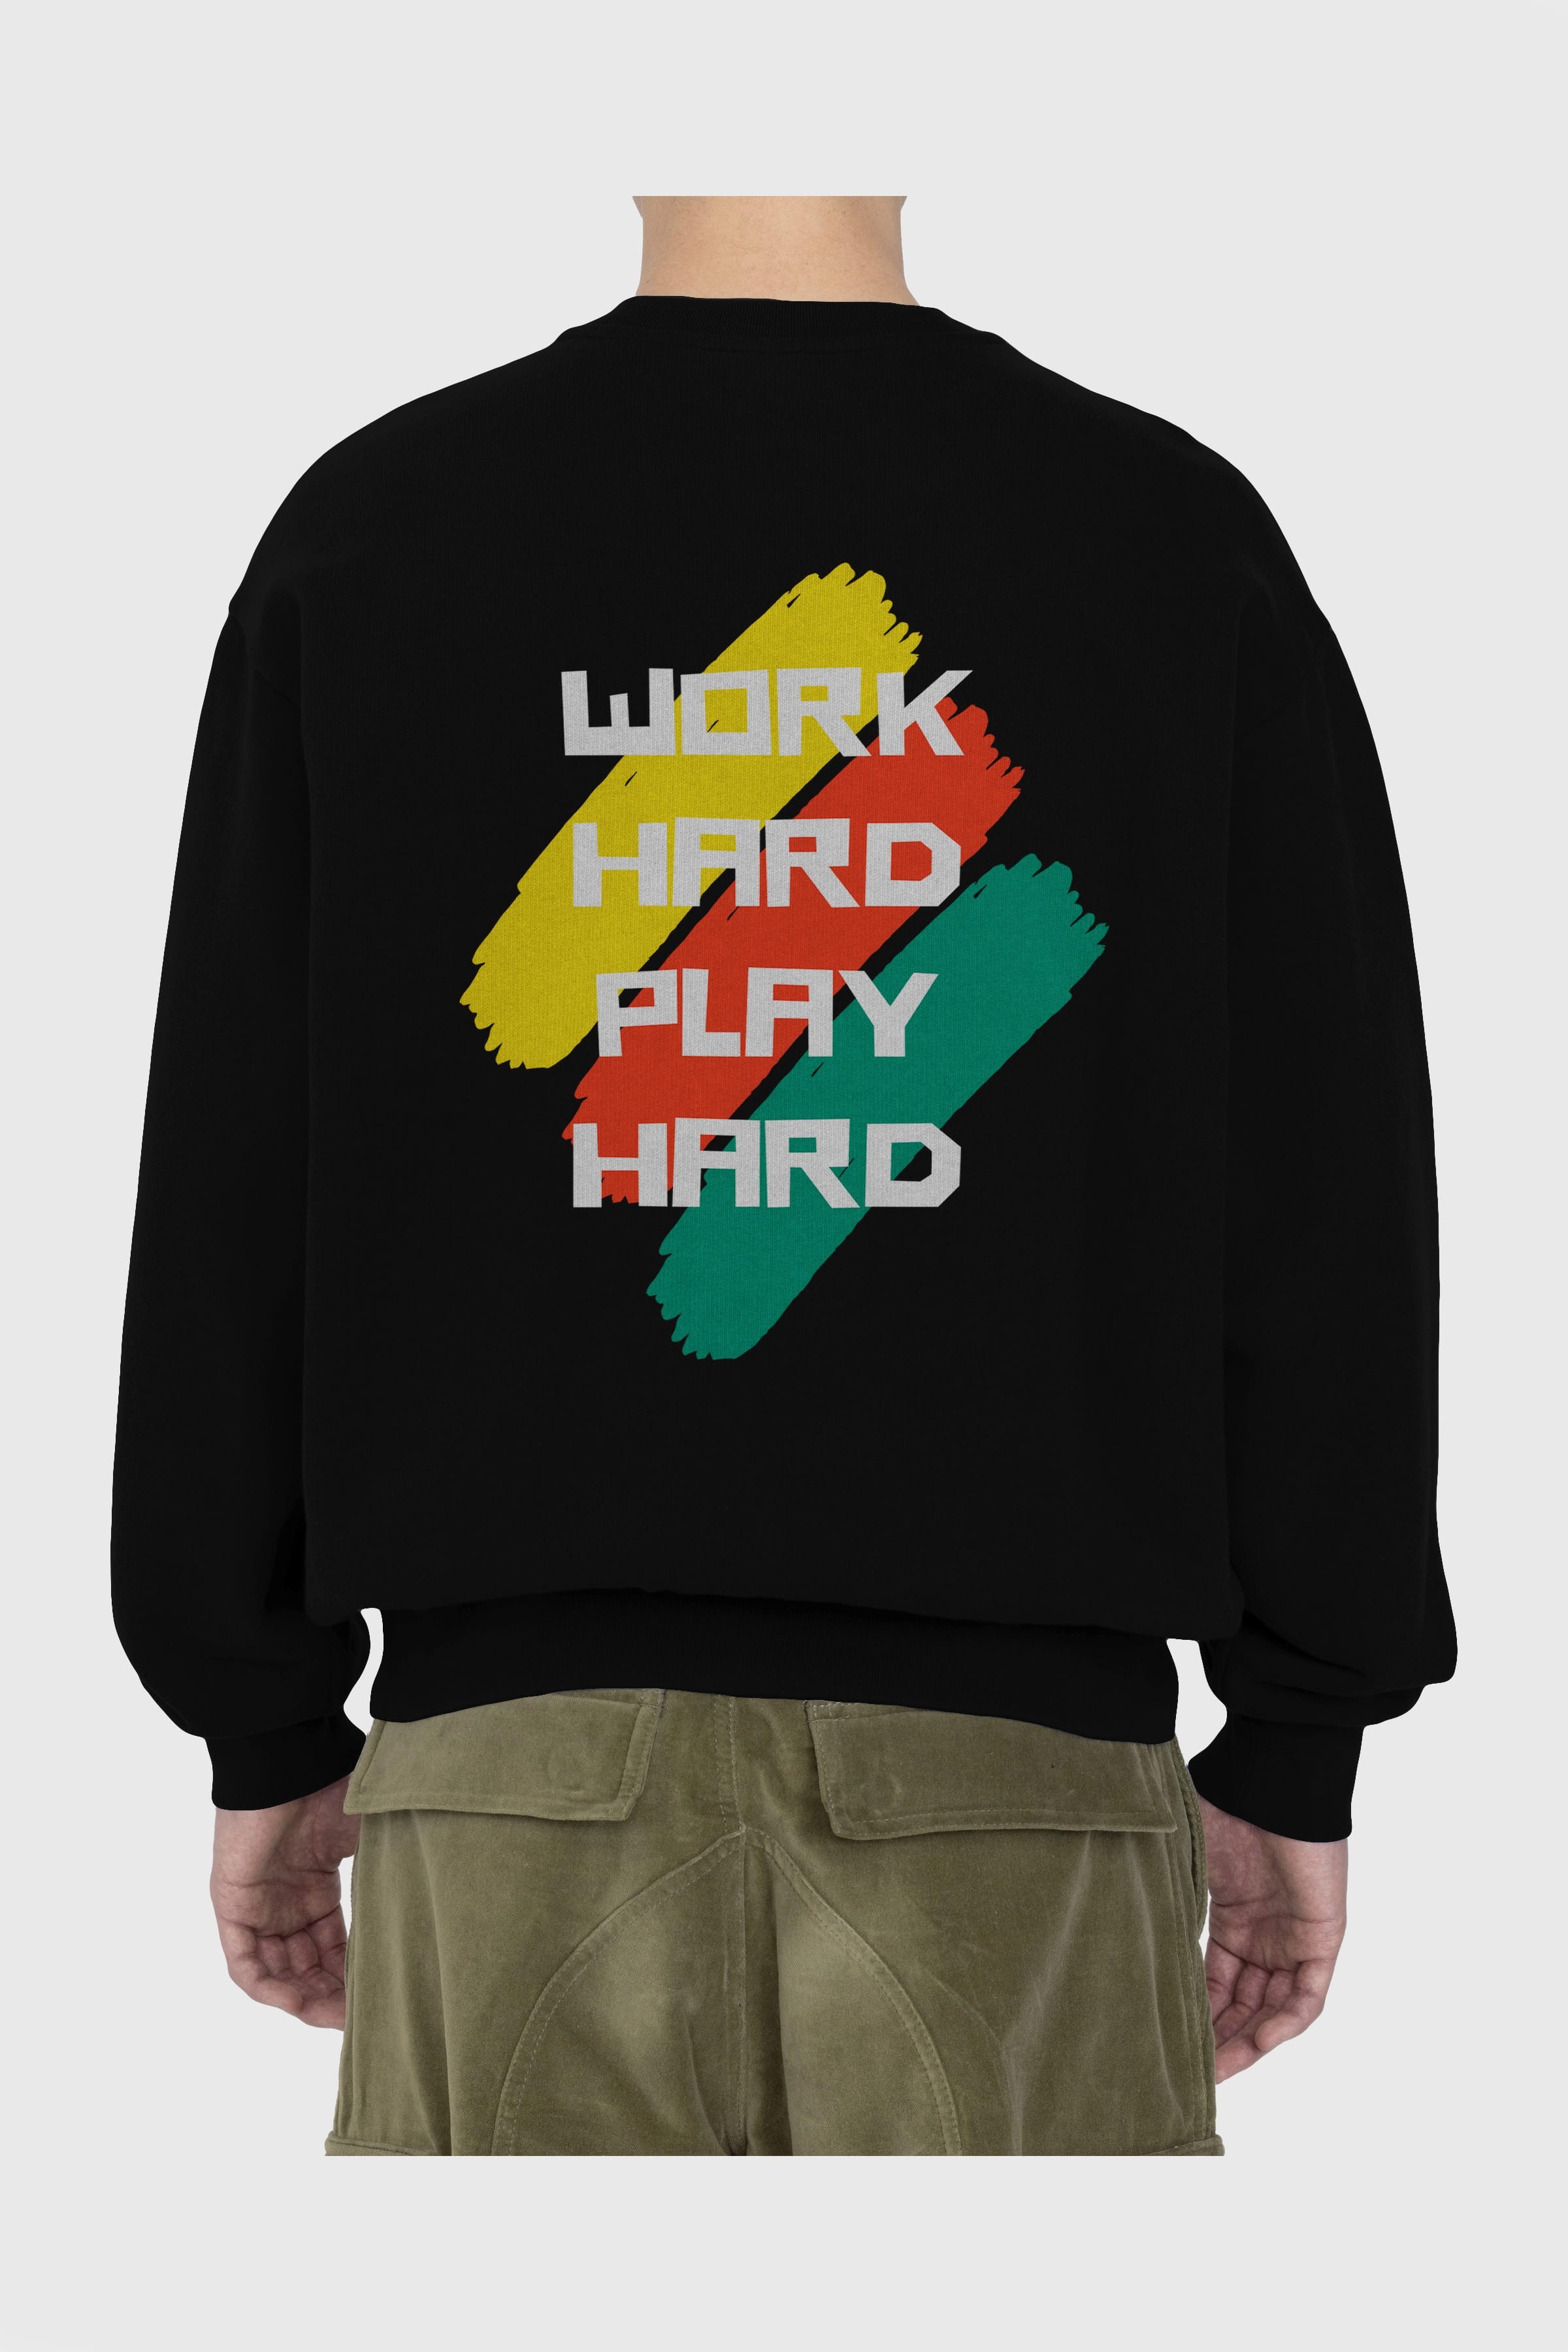 Work Hard Play Hard 2 Arka Baskılı Oversize Sweatshirt Erkek Kadın Unisex